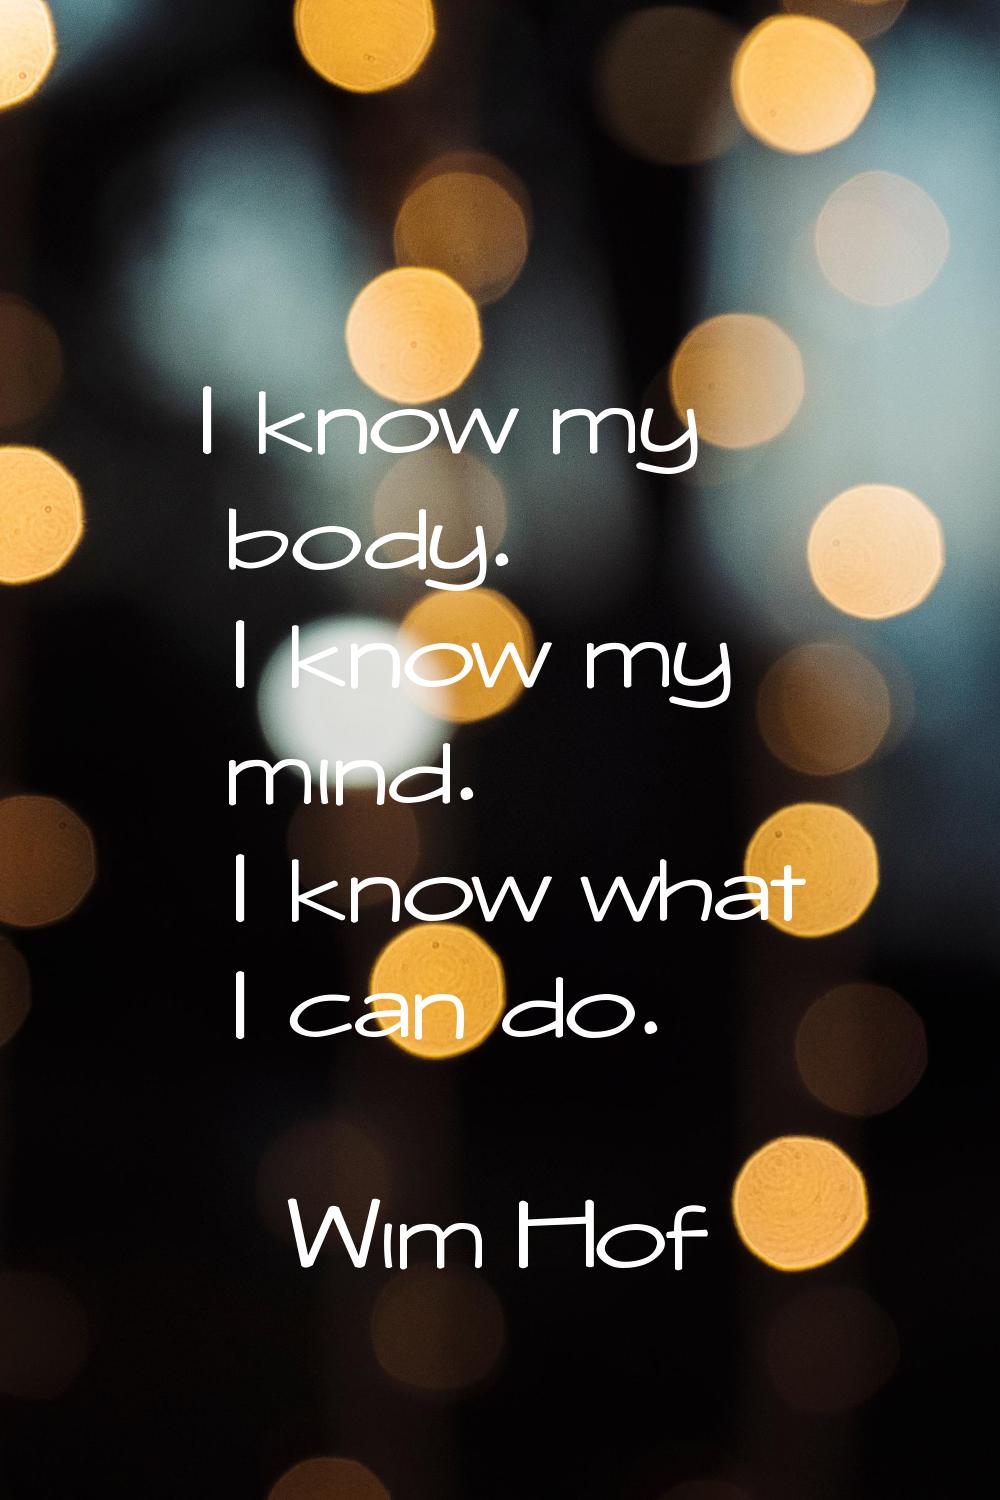 I know my body. I know my mind. I know what I can do.